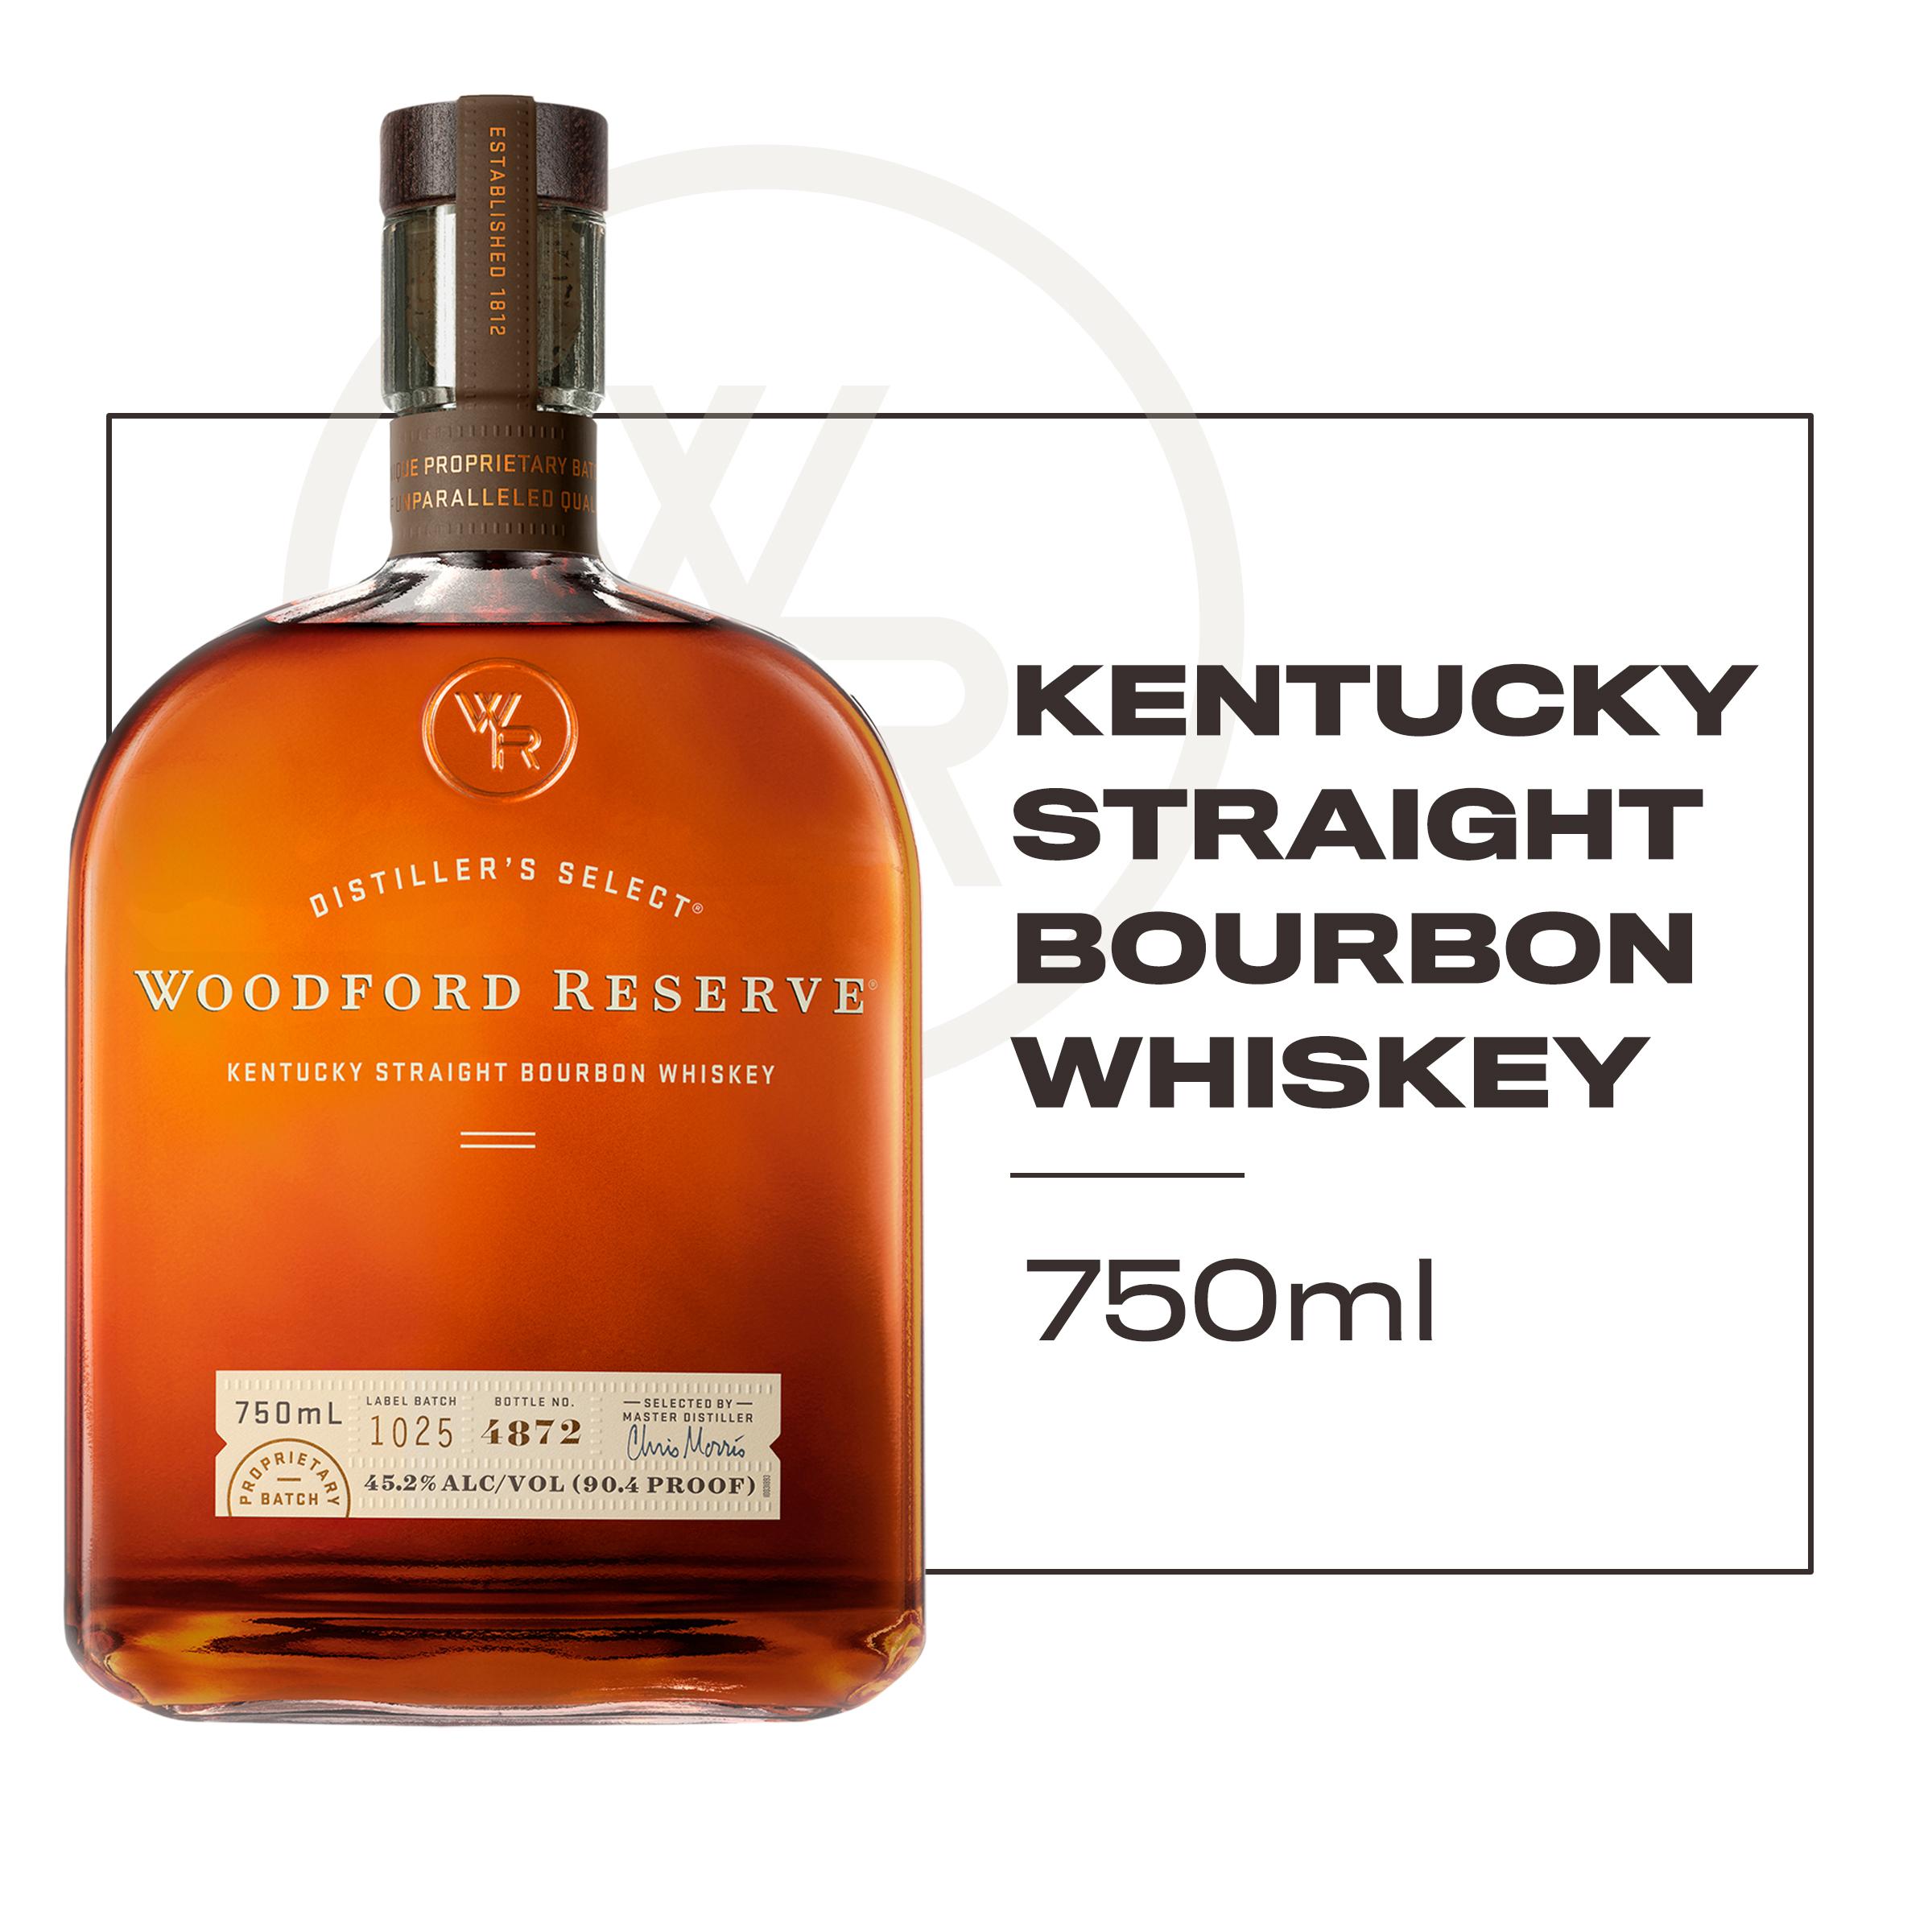 Woodford reserve kentucky straight bourbon whiskey bottle